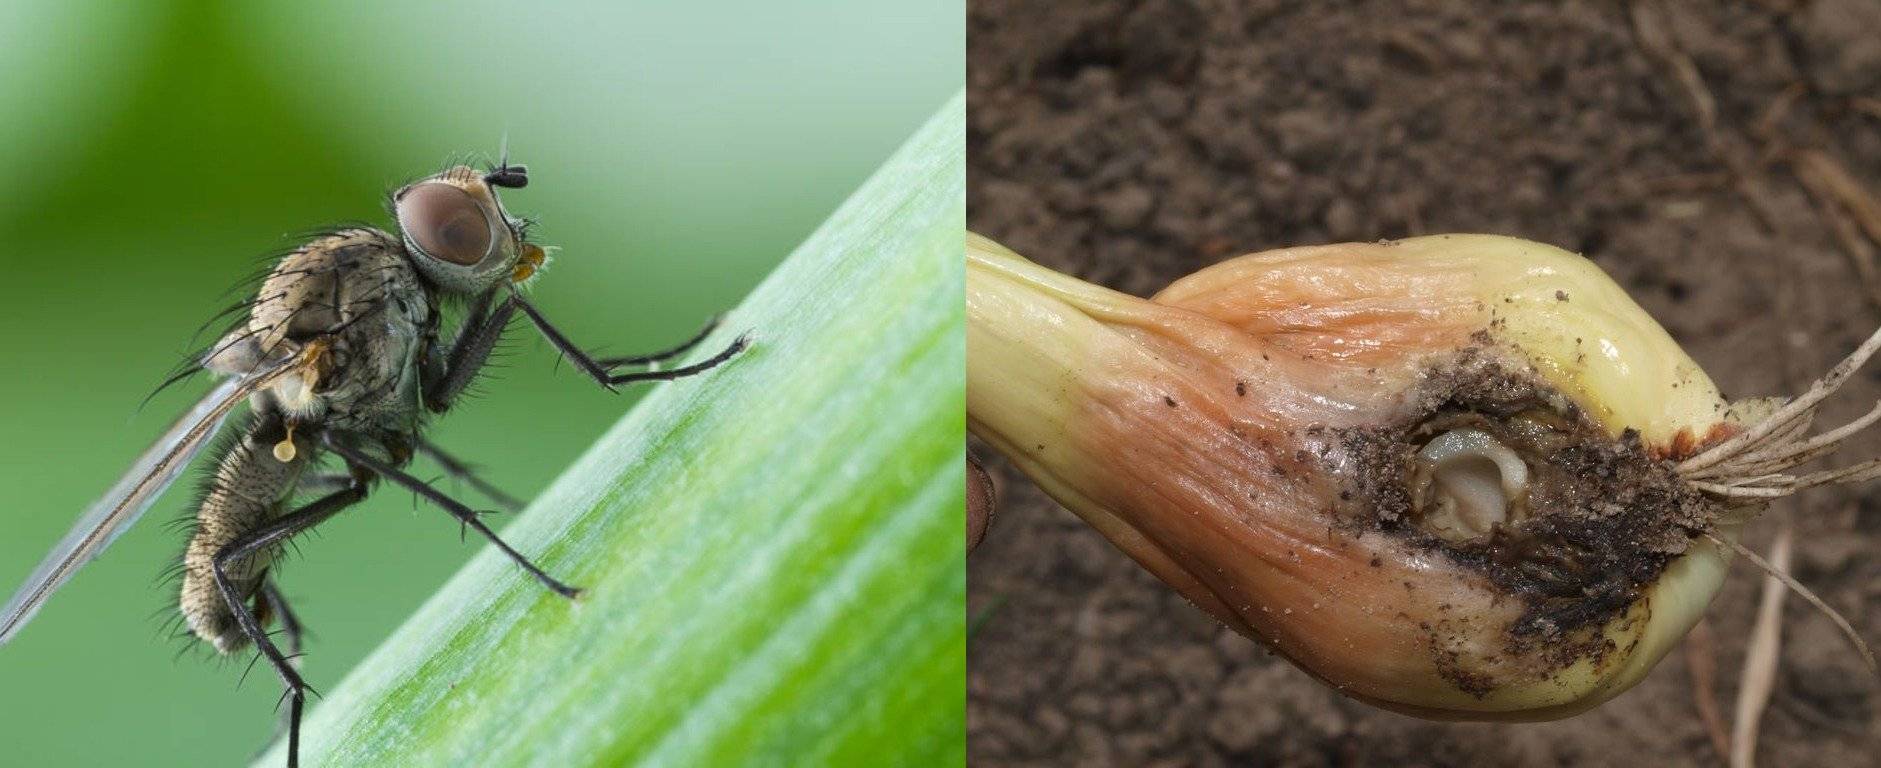 Луковоя муха - как избавиться от этого насекомого